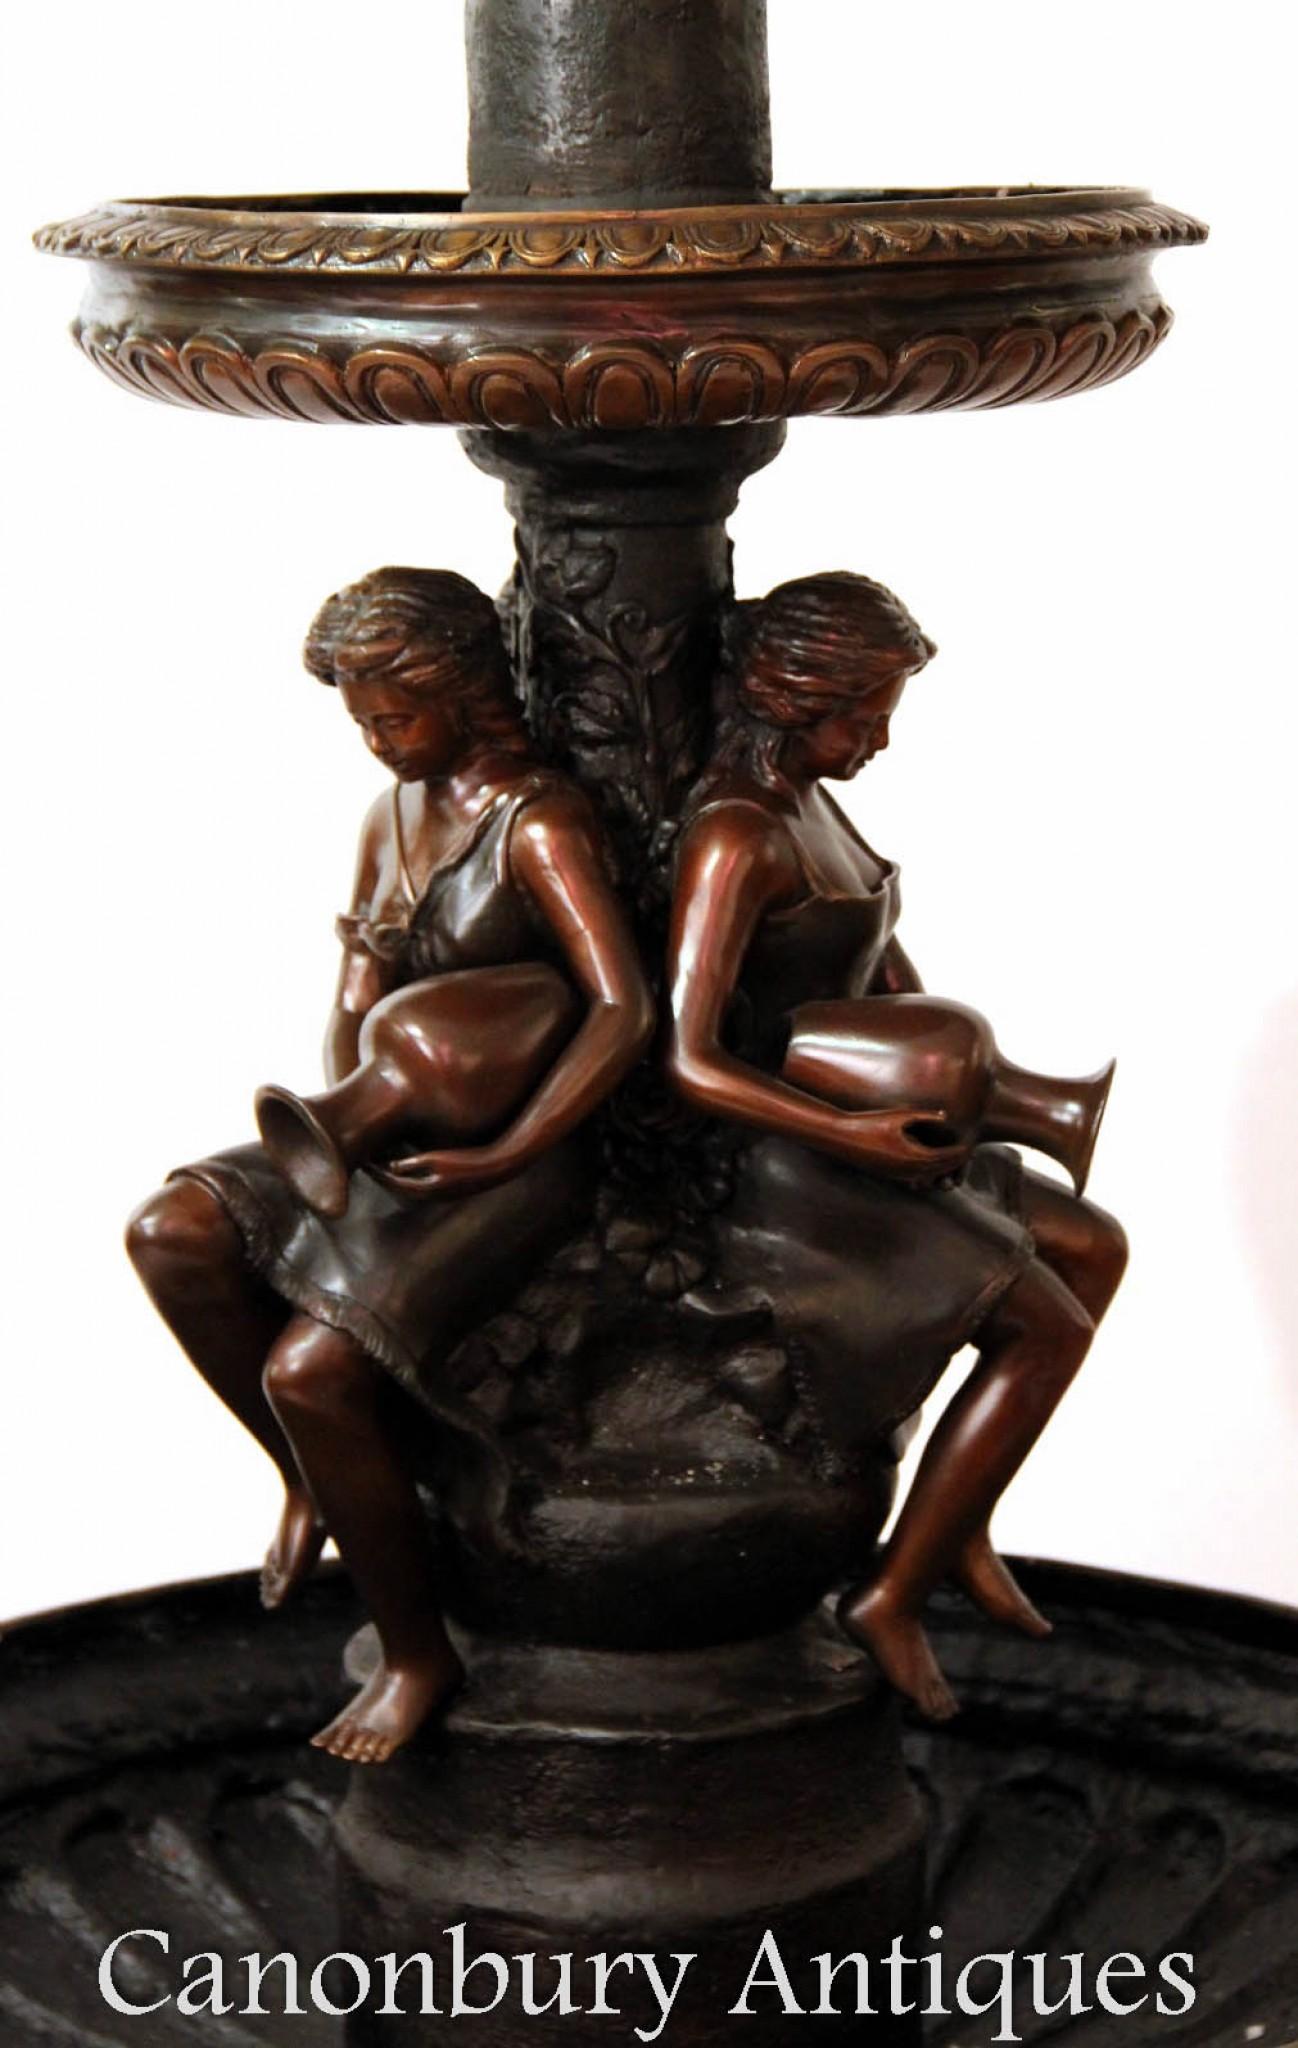 Niedlicher französischer Bronze-Gartenbrunnen
Zwei Ebenen, die erste Ebene zeigt die klassischen Jungfrauen mit Amphora-Urnen
Tolle Patina auf der Bronze
Can you imagine this configured and flowing with water?
Gekauft von einer Firma für